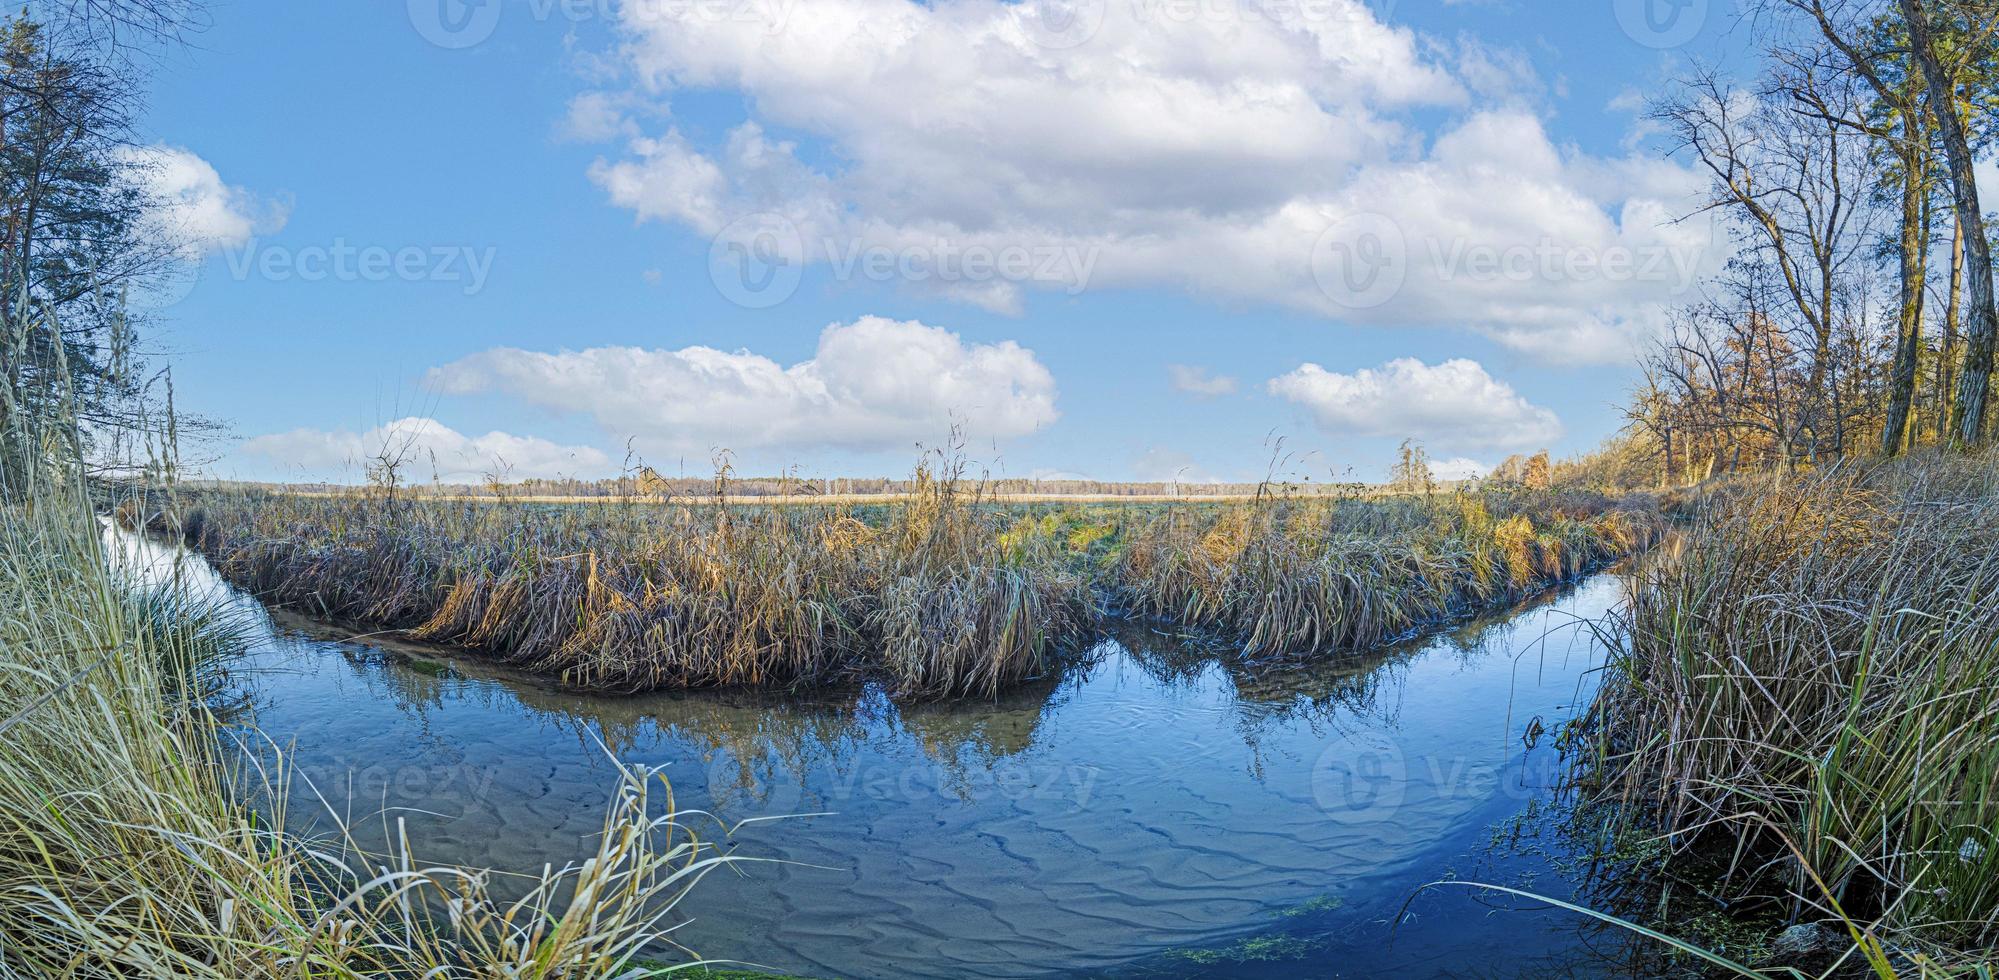 imagen panorámica de un arroyo natural frente a una gran pradera bajo el sol foto